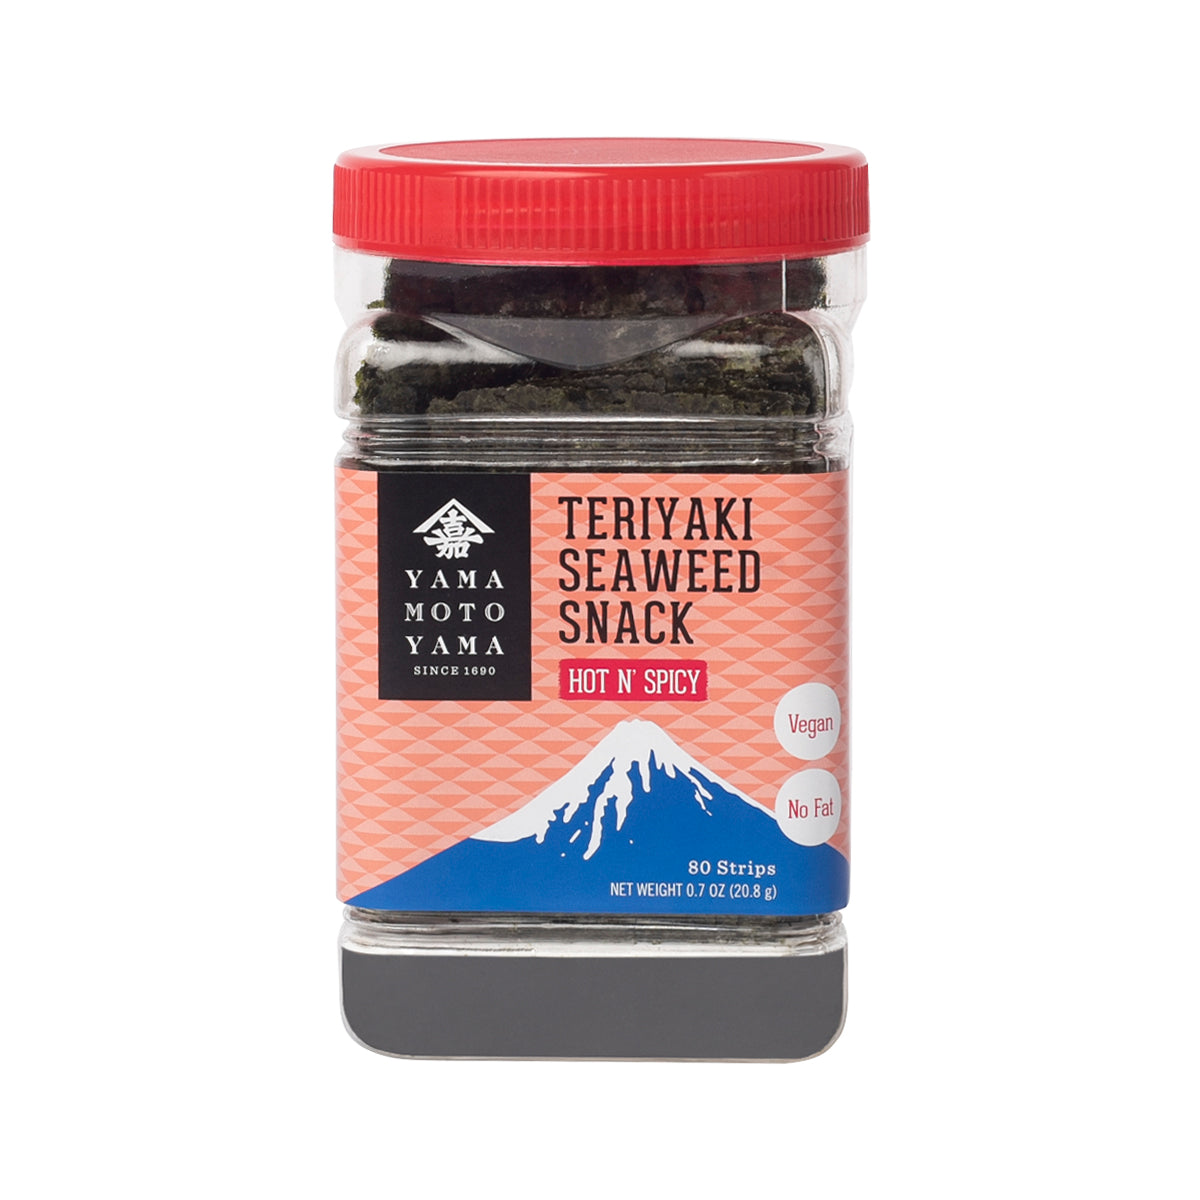 Teriyaki Seaweed Snack: Hot N'Spicy